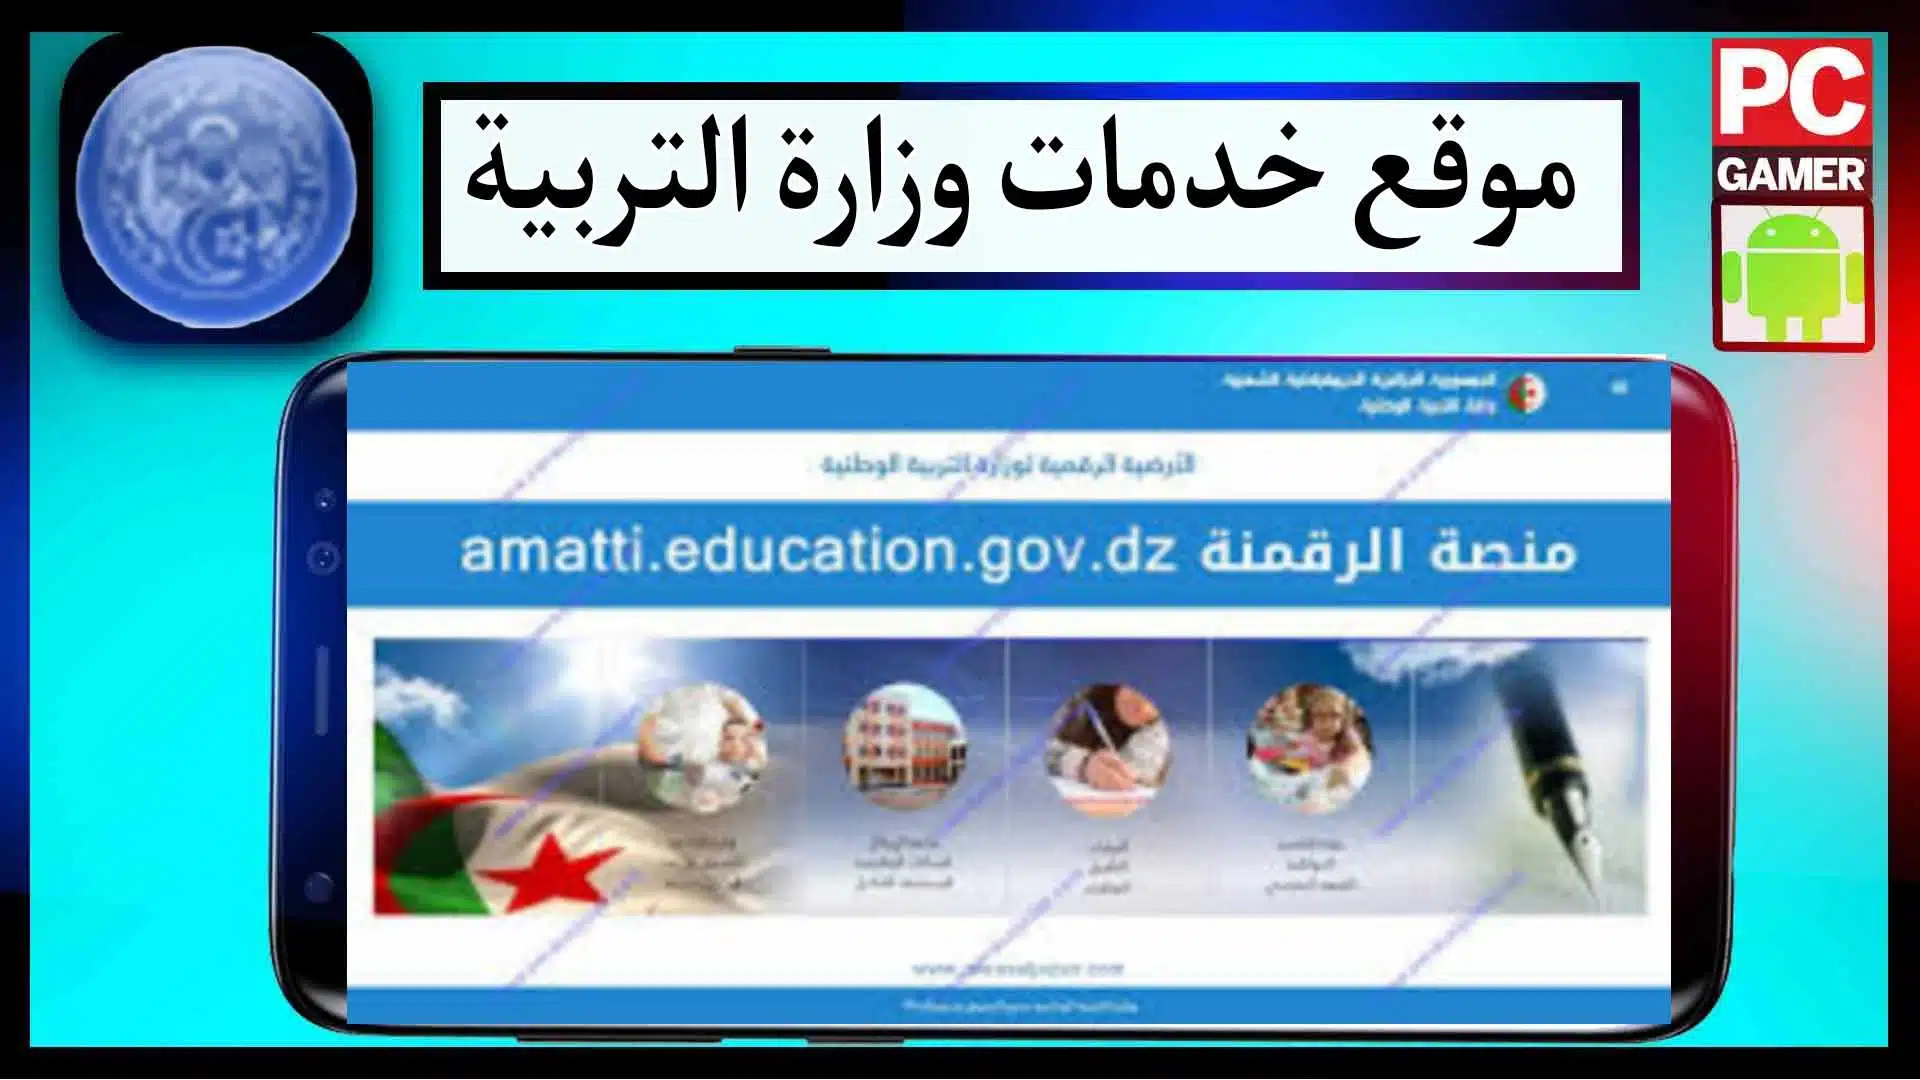 موقع الرقمنة وزارة التربية الوطنية amatti.education.gov.dz تسجيل الدخول مجانا 2023